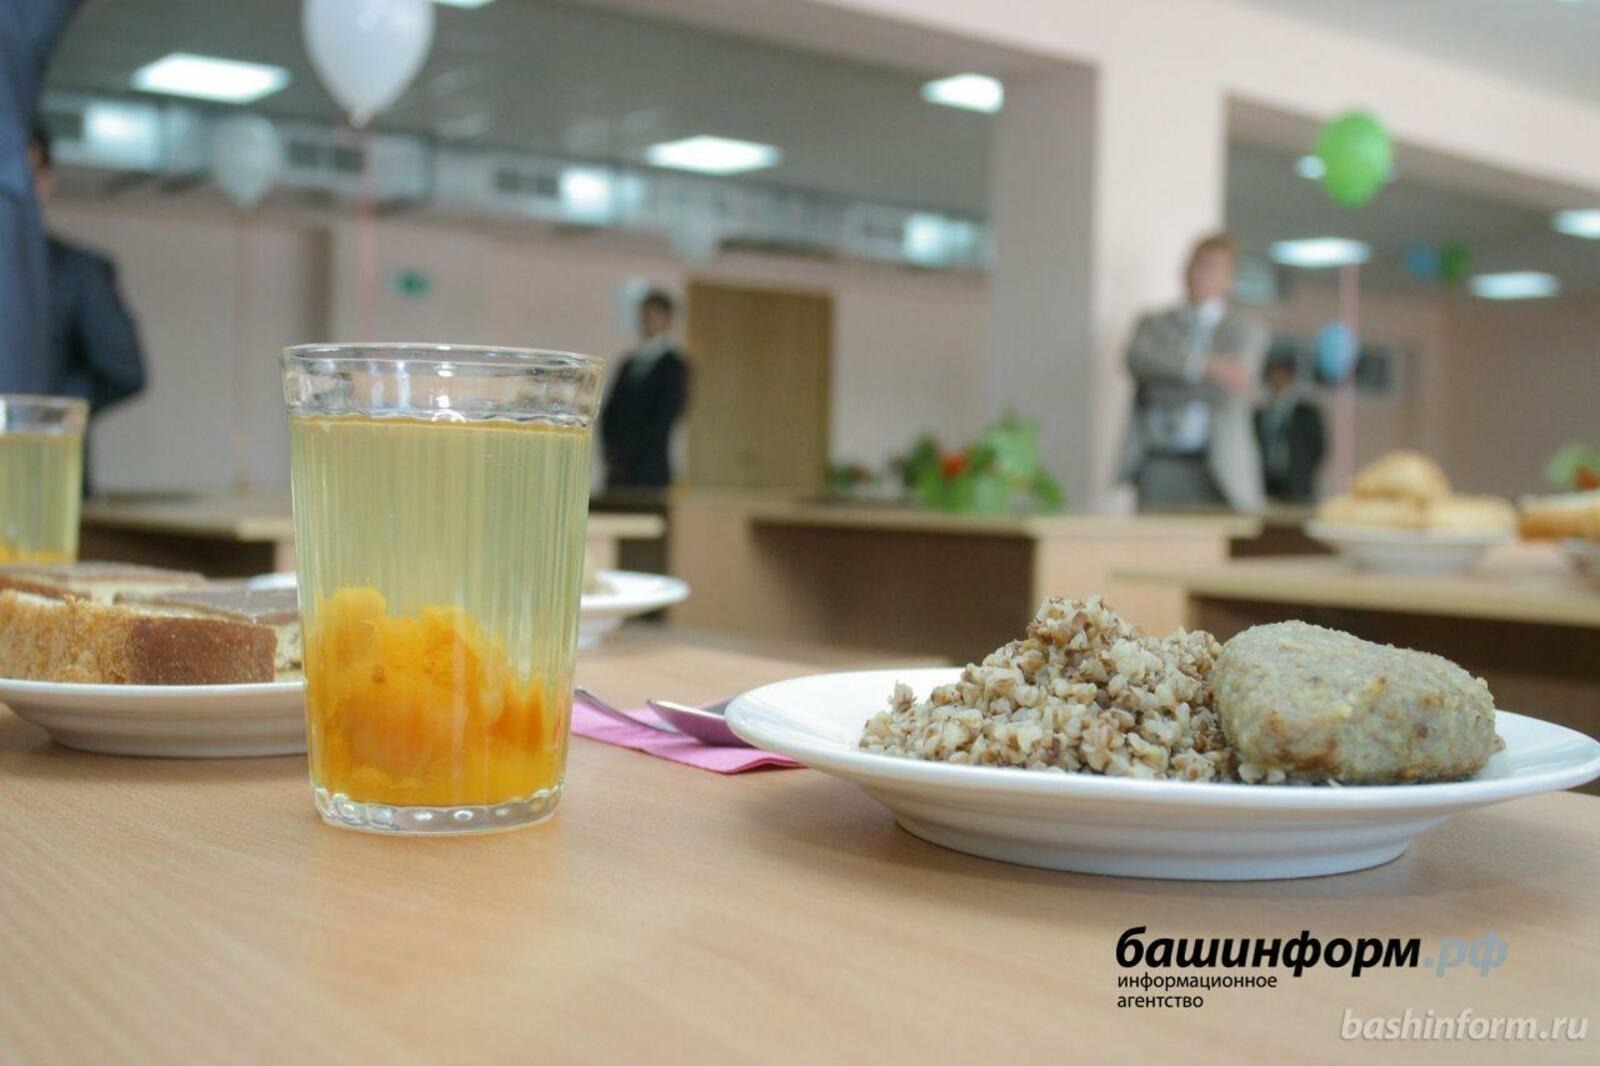 Жители Башкирии могут высказать мнение о качестве питания и обеспечении безопасности в школах